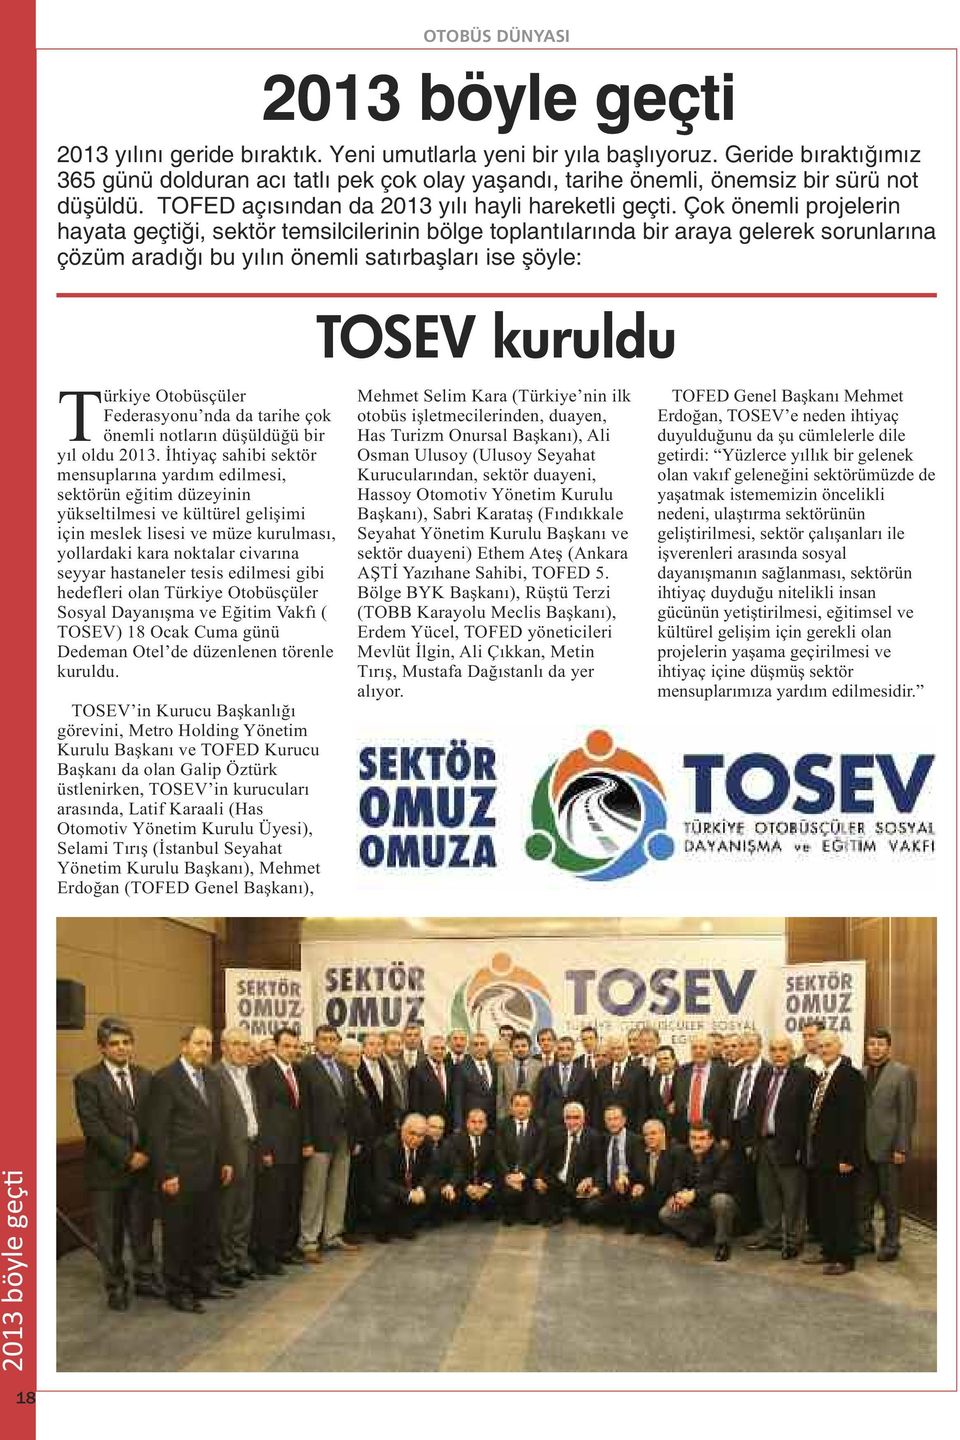 Çok önemli projelerin hayata geçtiği, sektör temsilcilerinin bölge toplantılarında bir araya gelerek sorunlarına çözüm aradığı bu yılın önemli satırbaşları ise şöyle: TOSEV kuruldu Türkiye